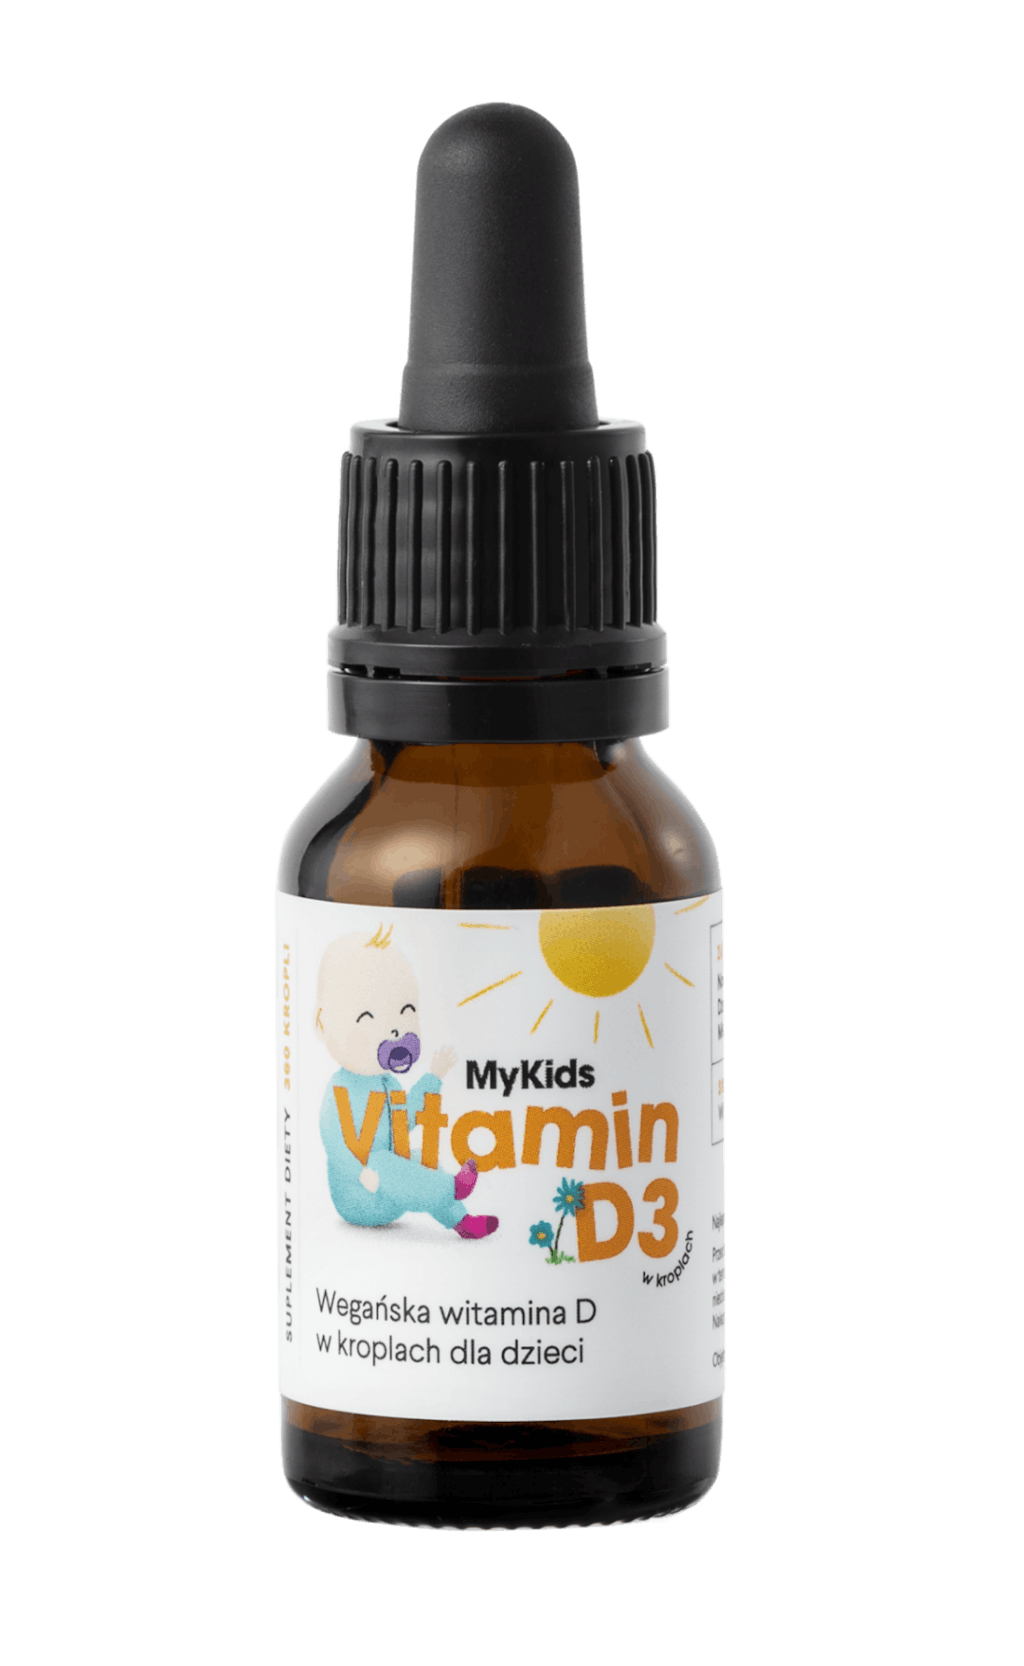 MyKids Vitamin D3